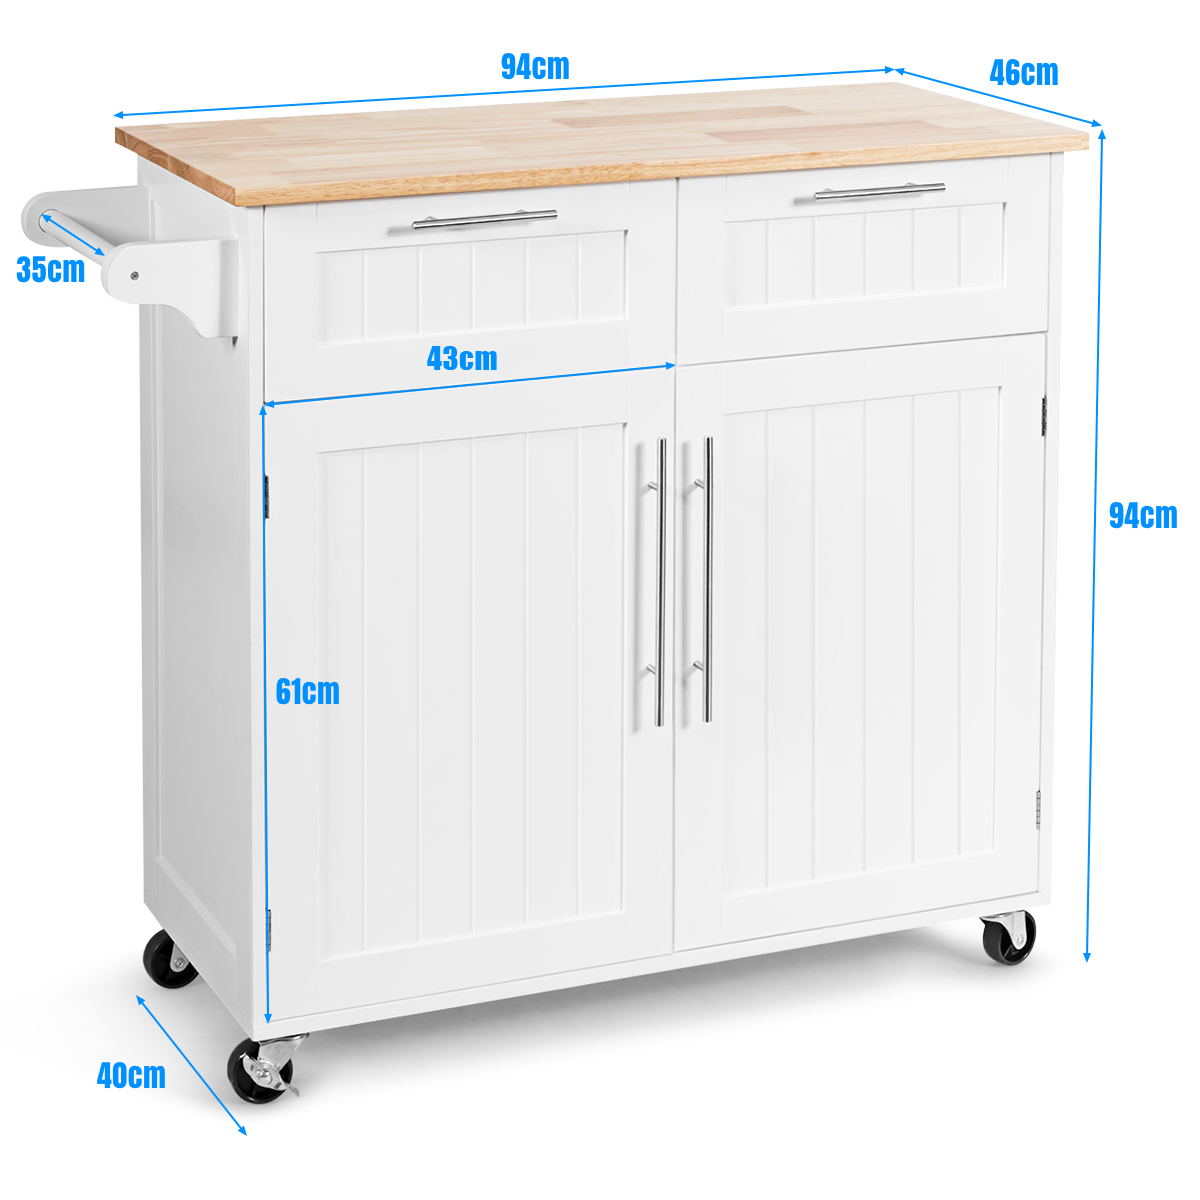 Rolling_Kitchen_Island_with_2_Door_Storage_Cabinet_White_Size-4.jpg